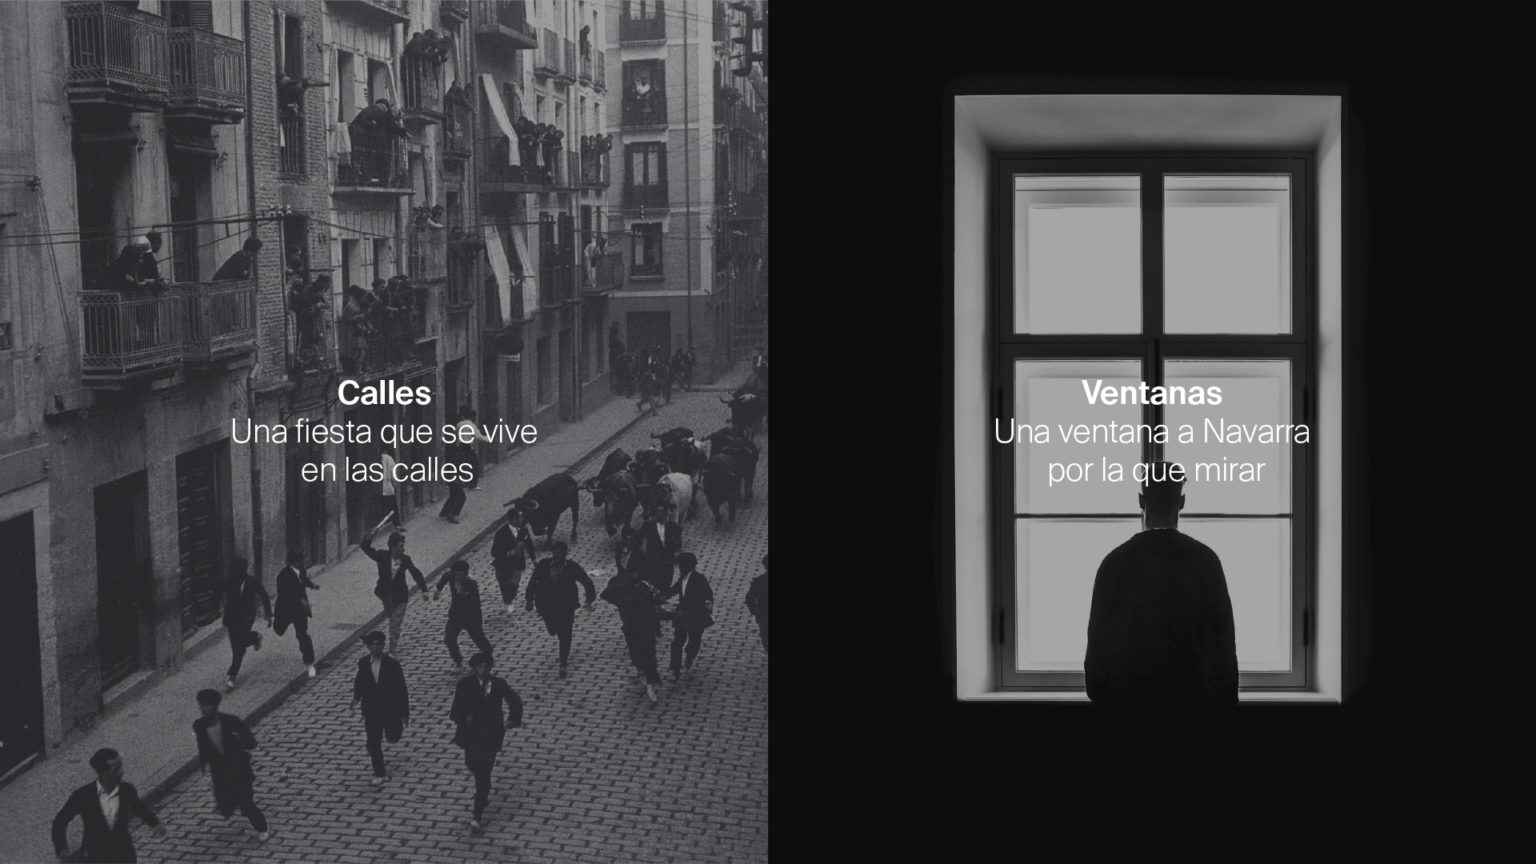 Calles-Ventanas-1536×864-1